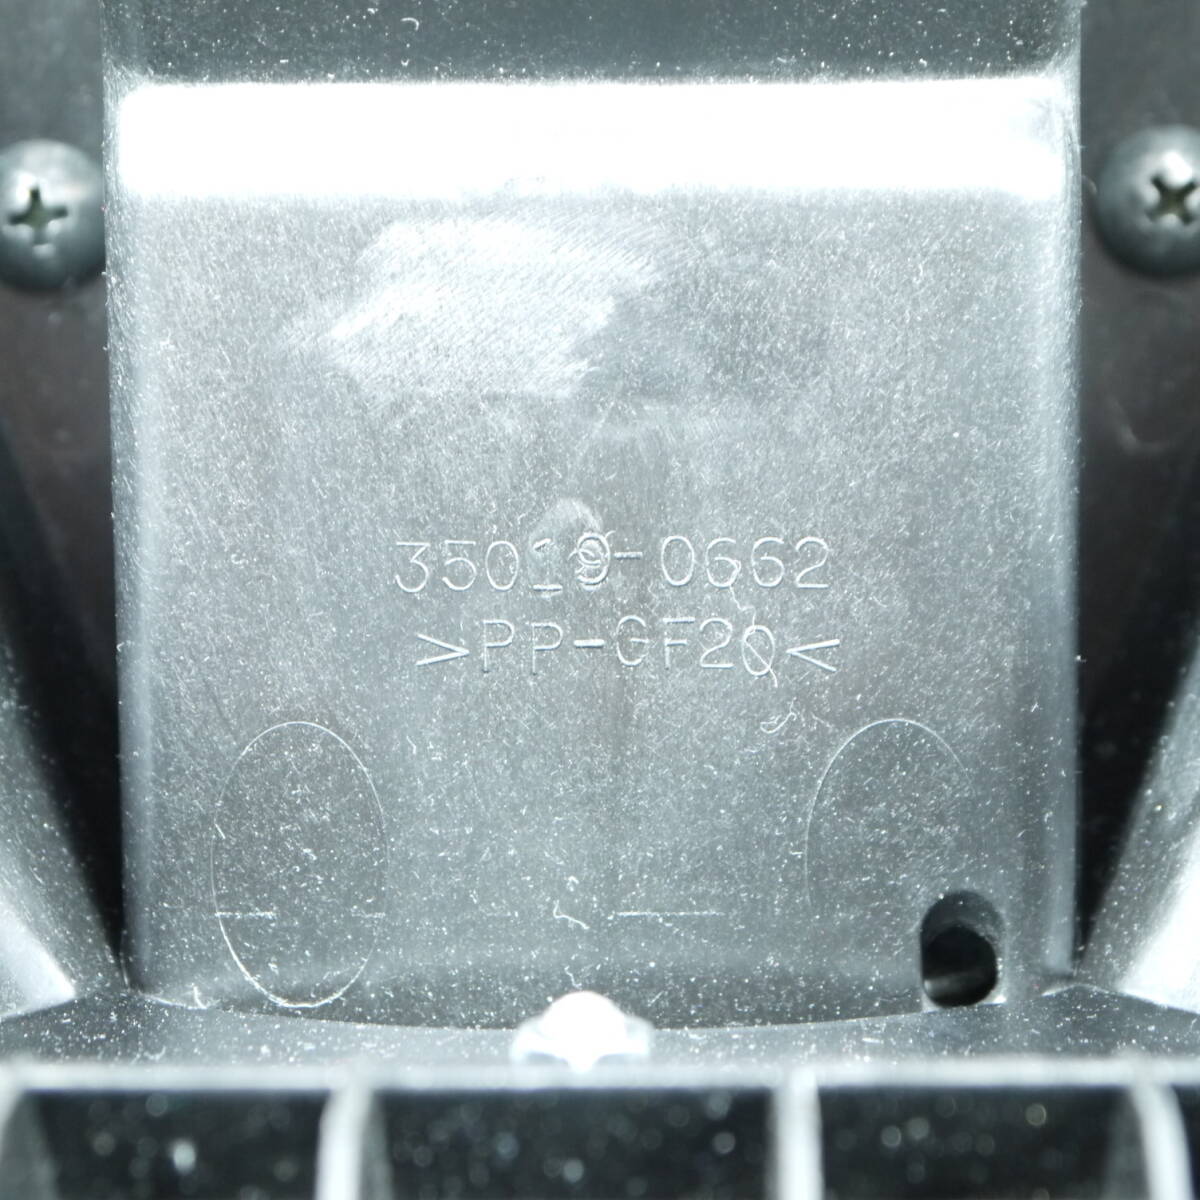 カワサキ Z900RS 純正リアフェンダー 35019-0662(BC1311)_画像6